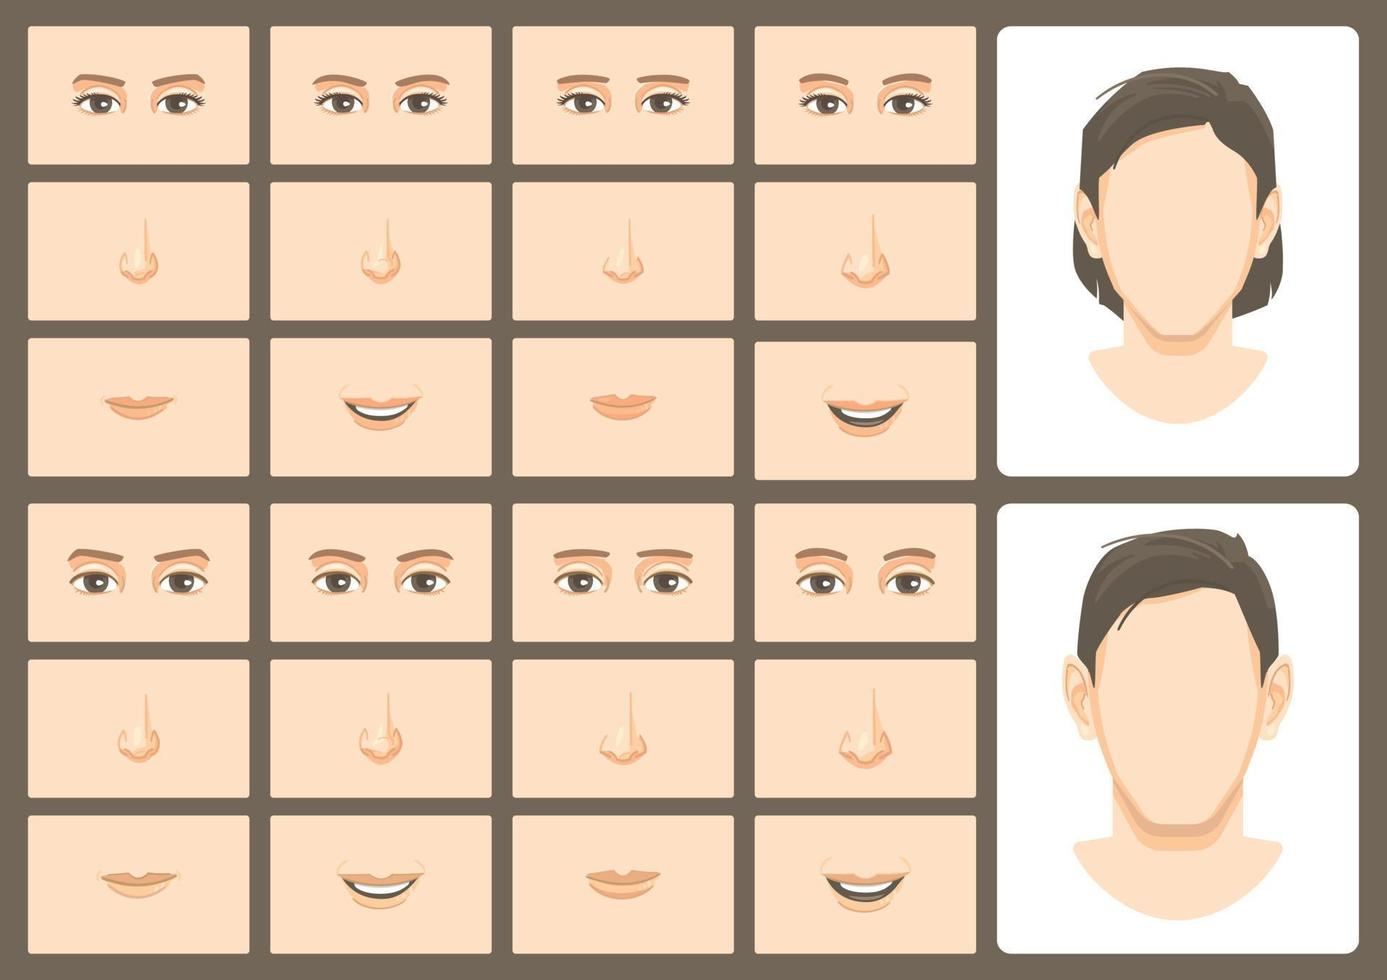 ansikte konstruktör anpassat kombination av 4 element av ögon nod mun av en manlig och kvinna figur version 1 vektor